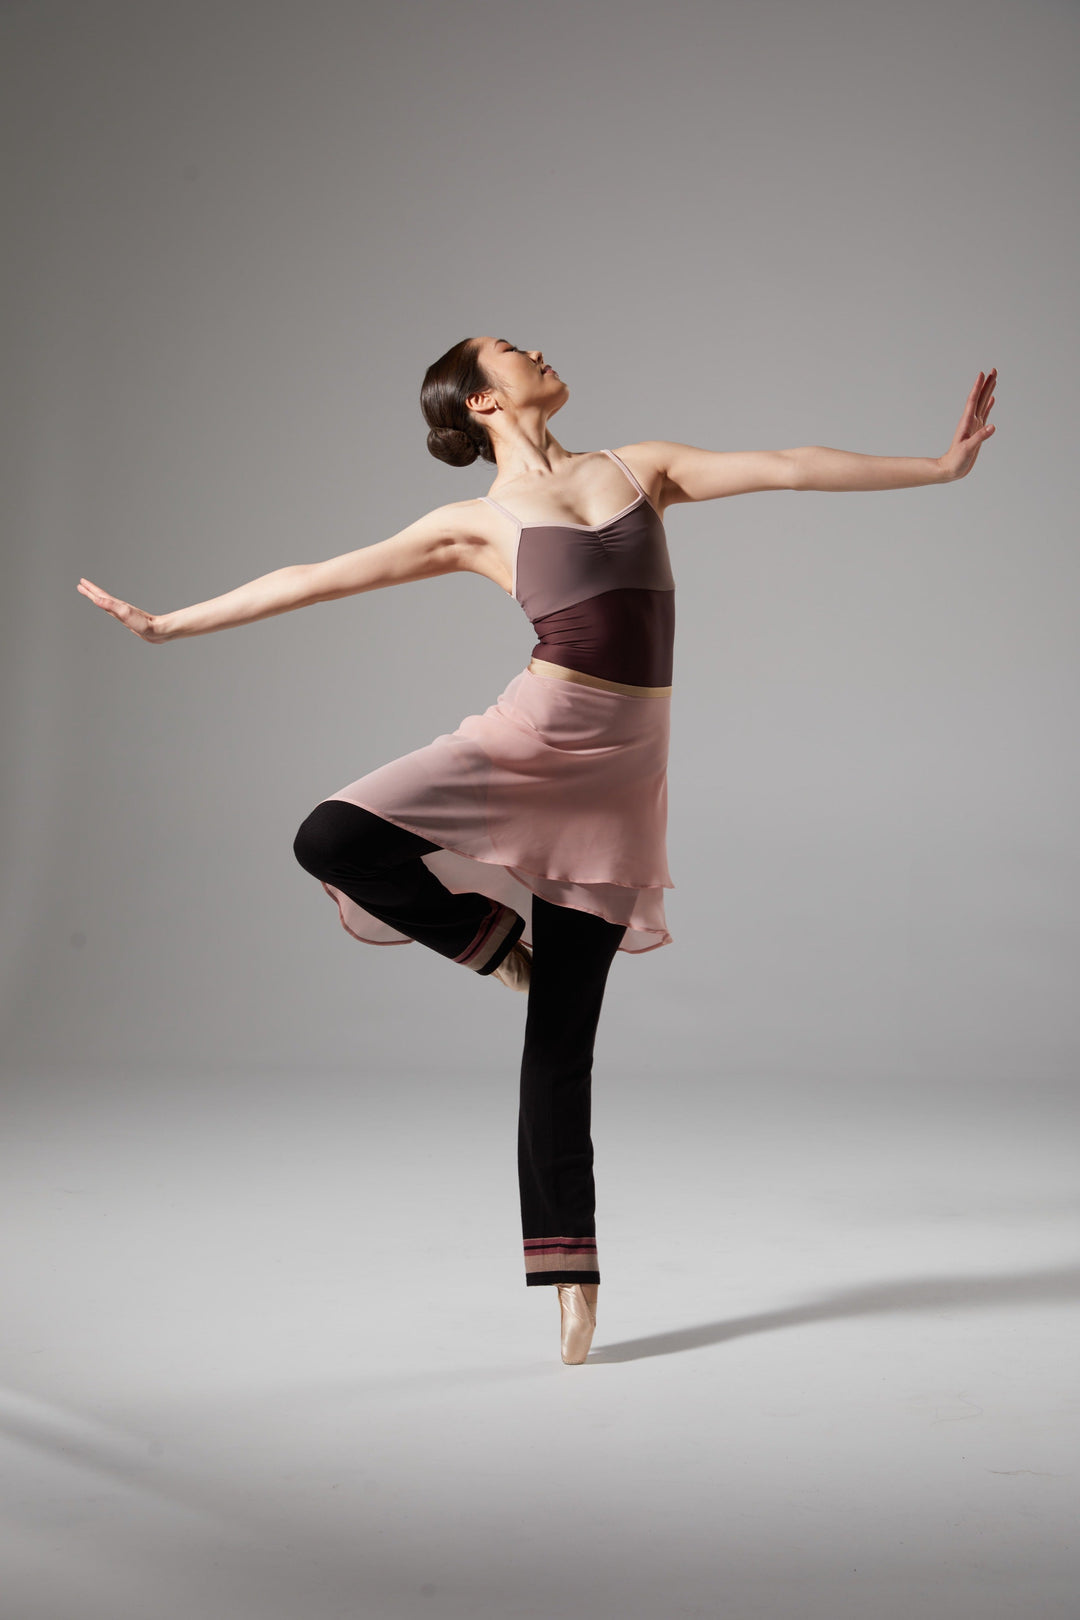 White & Black Stripes Dance/Ballet Leg Warmers - Leg Warmers